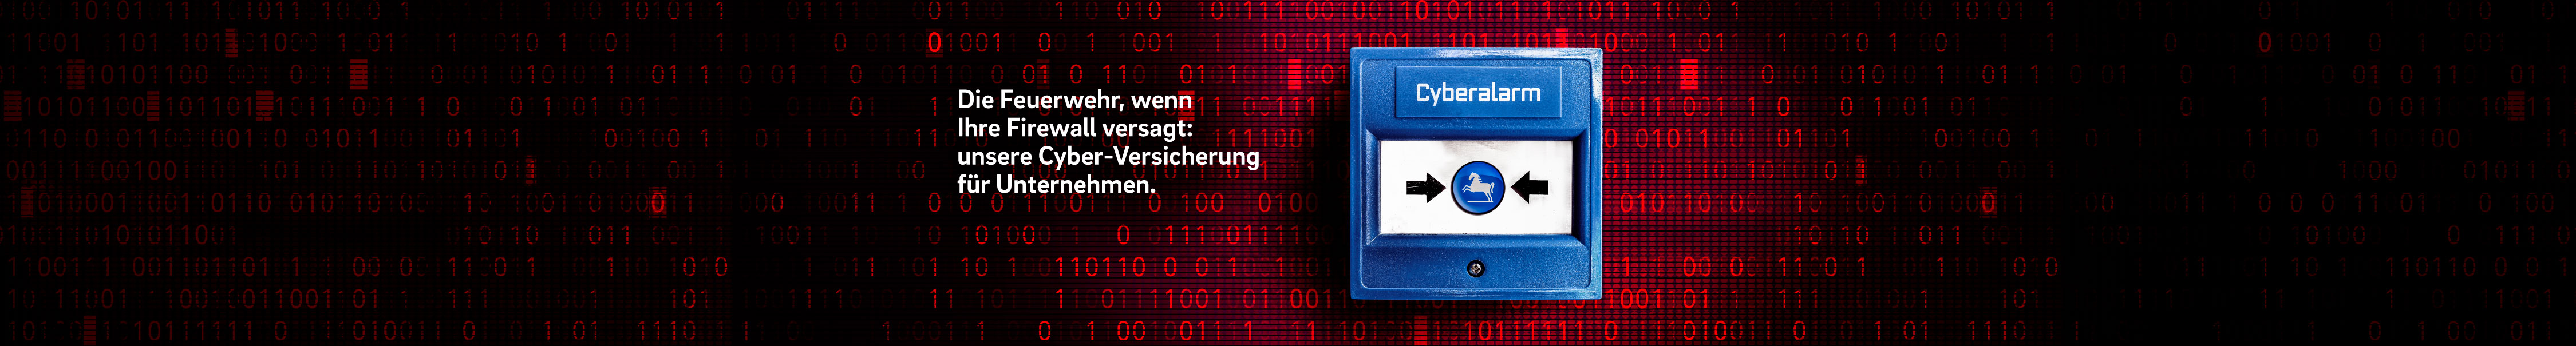 cyber-firmenschutz-large